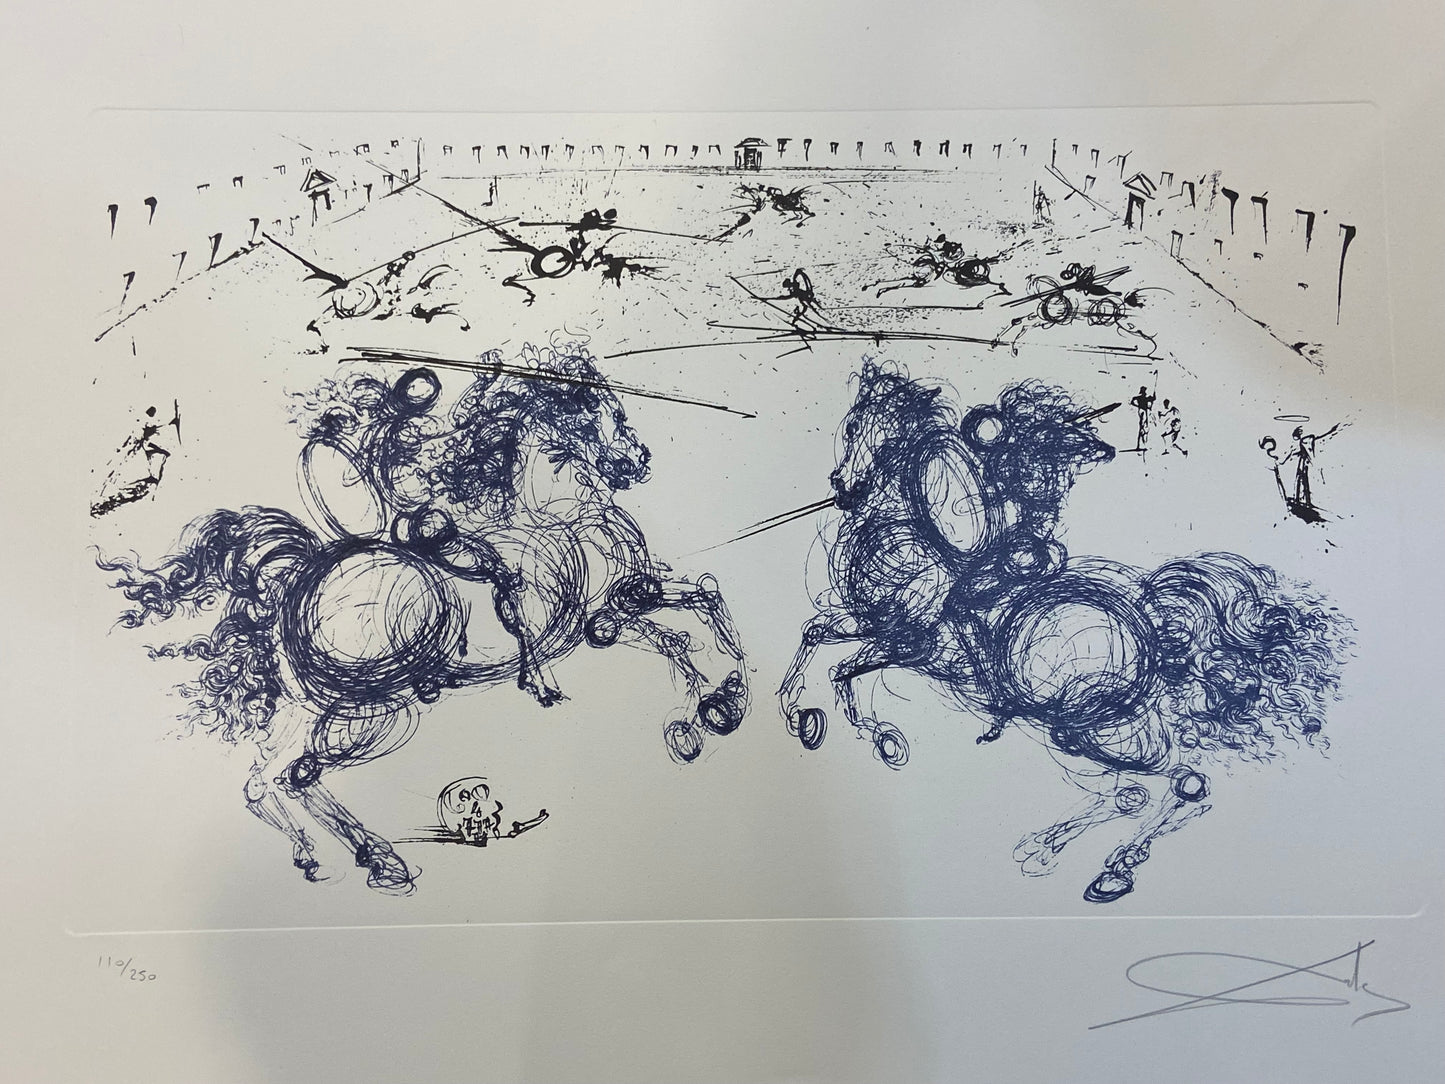 After Salvador Dalí "Combat de Cavaliers" Lithograph 110/250 (27811)